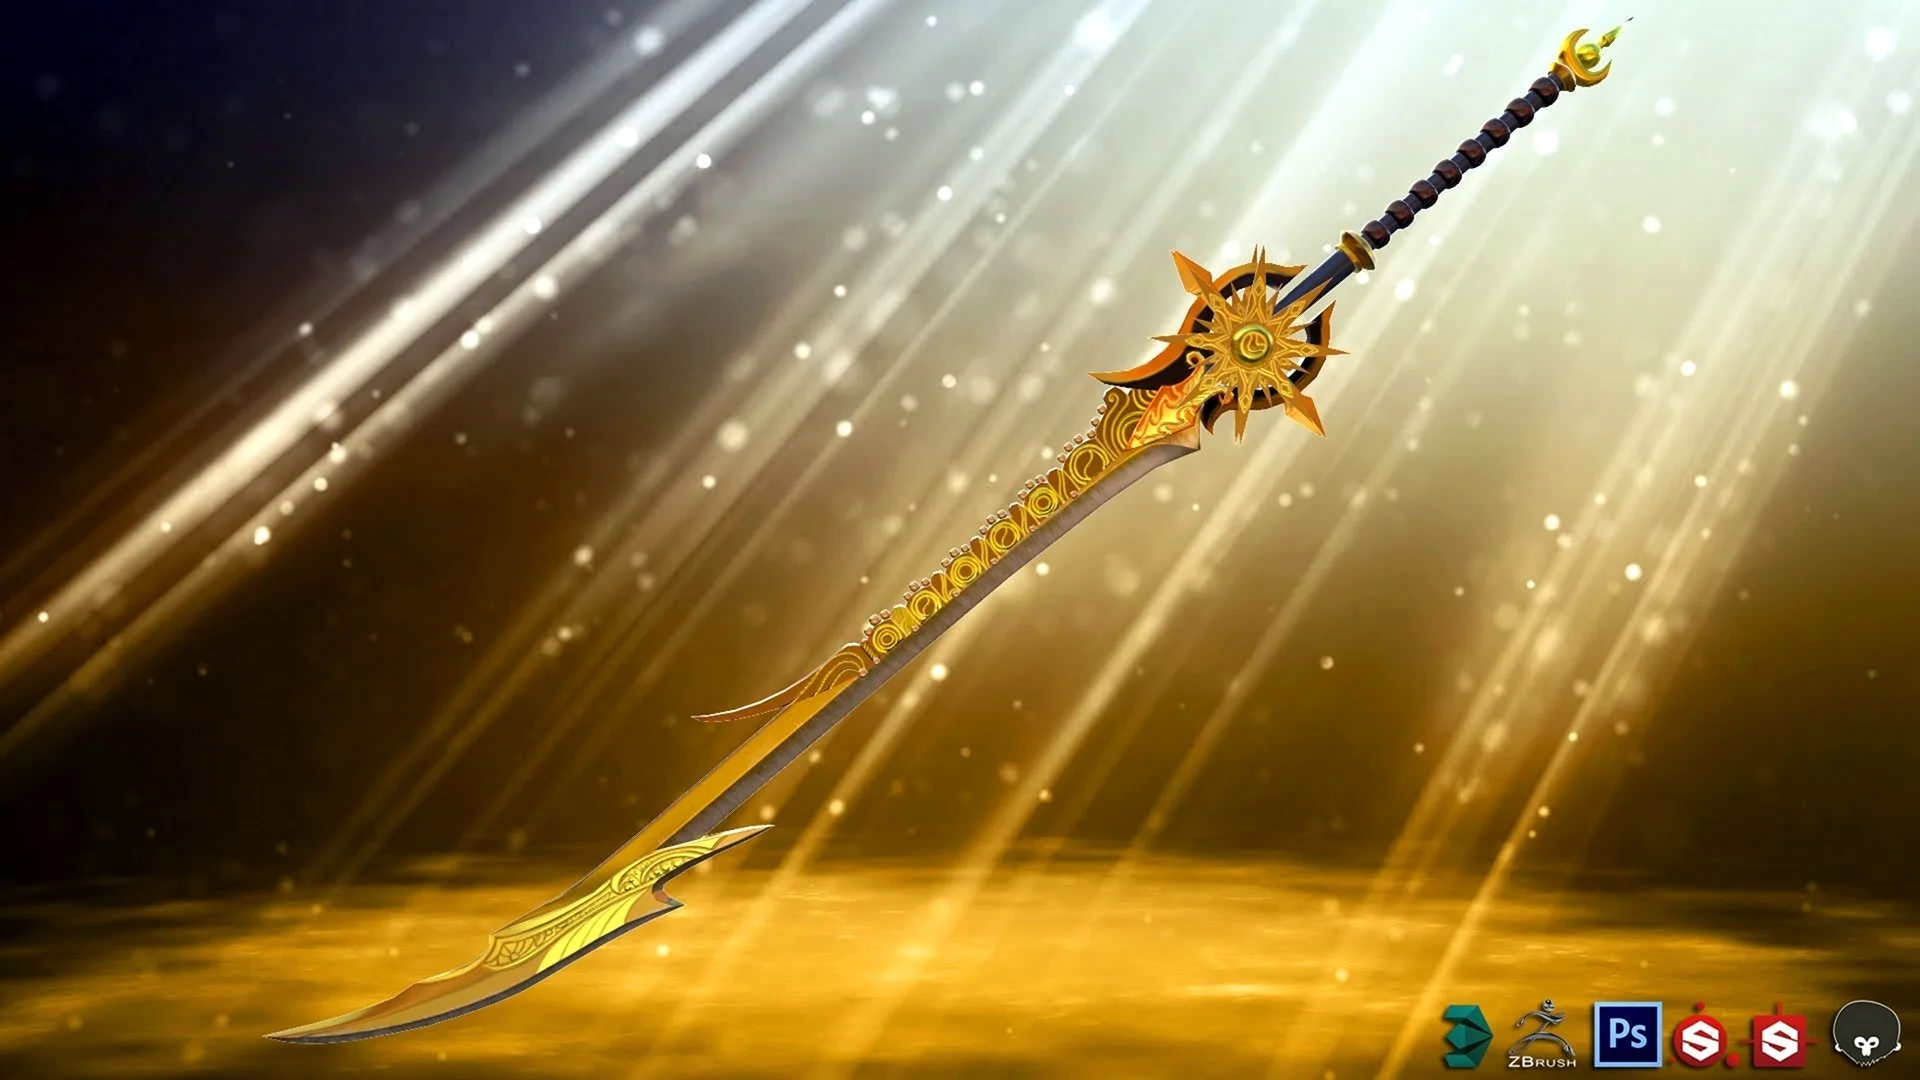 Двуручный меч фэнтези золотой